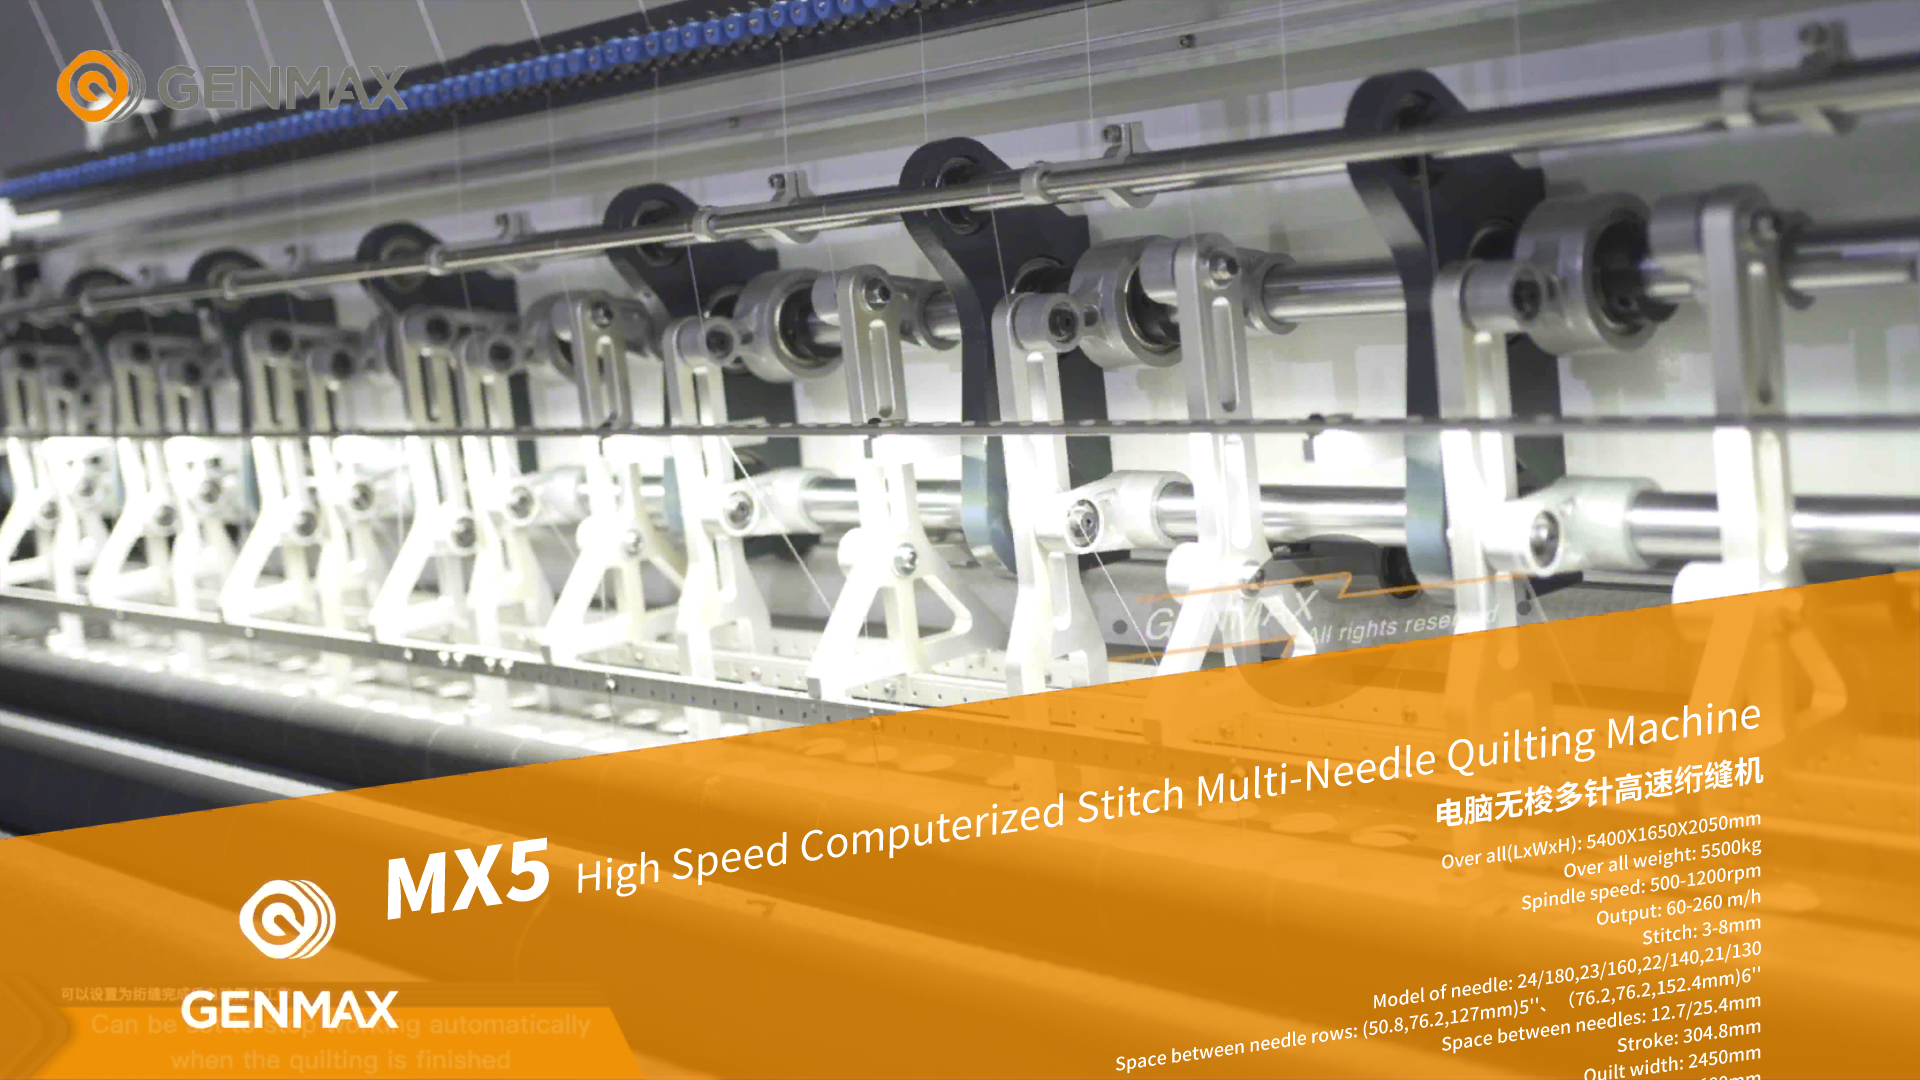 Máquina Genmax - Máquina de acolchado de múltiples agujas de puntada computarizada de alta velocidad MX5 del cliente de Marruecos